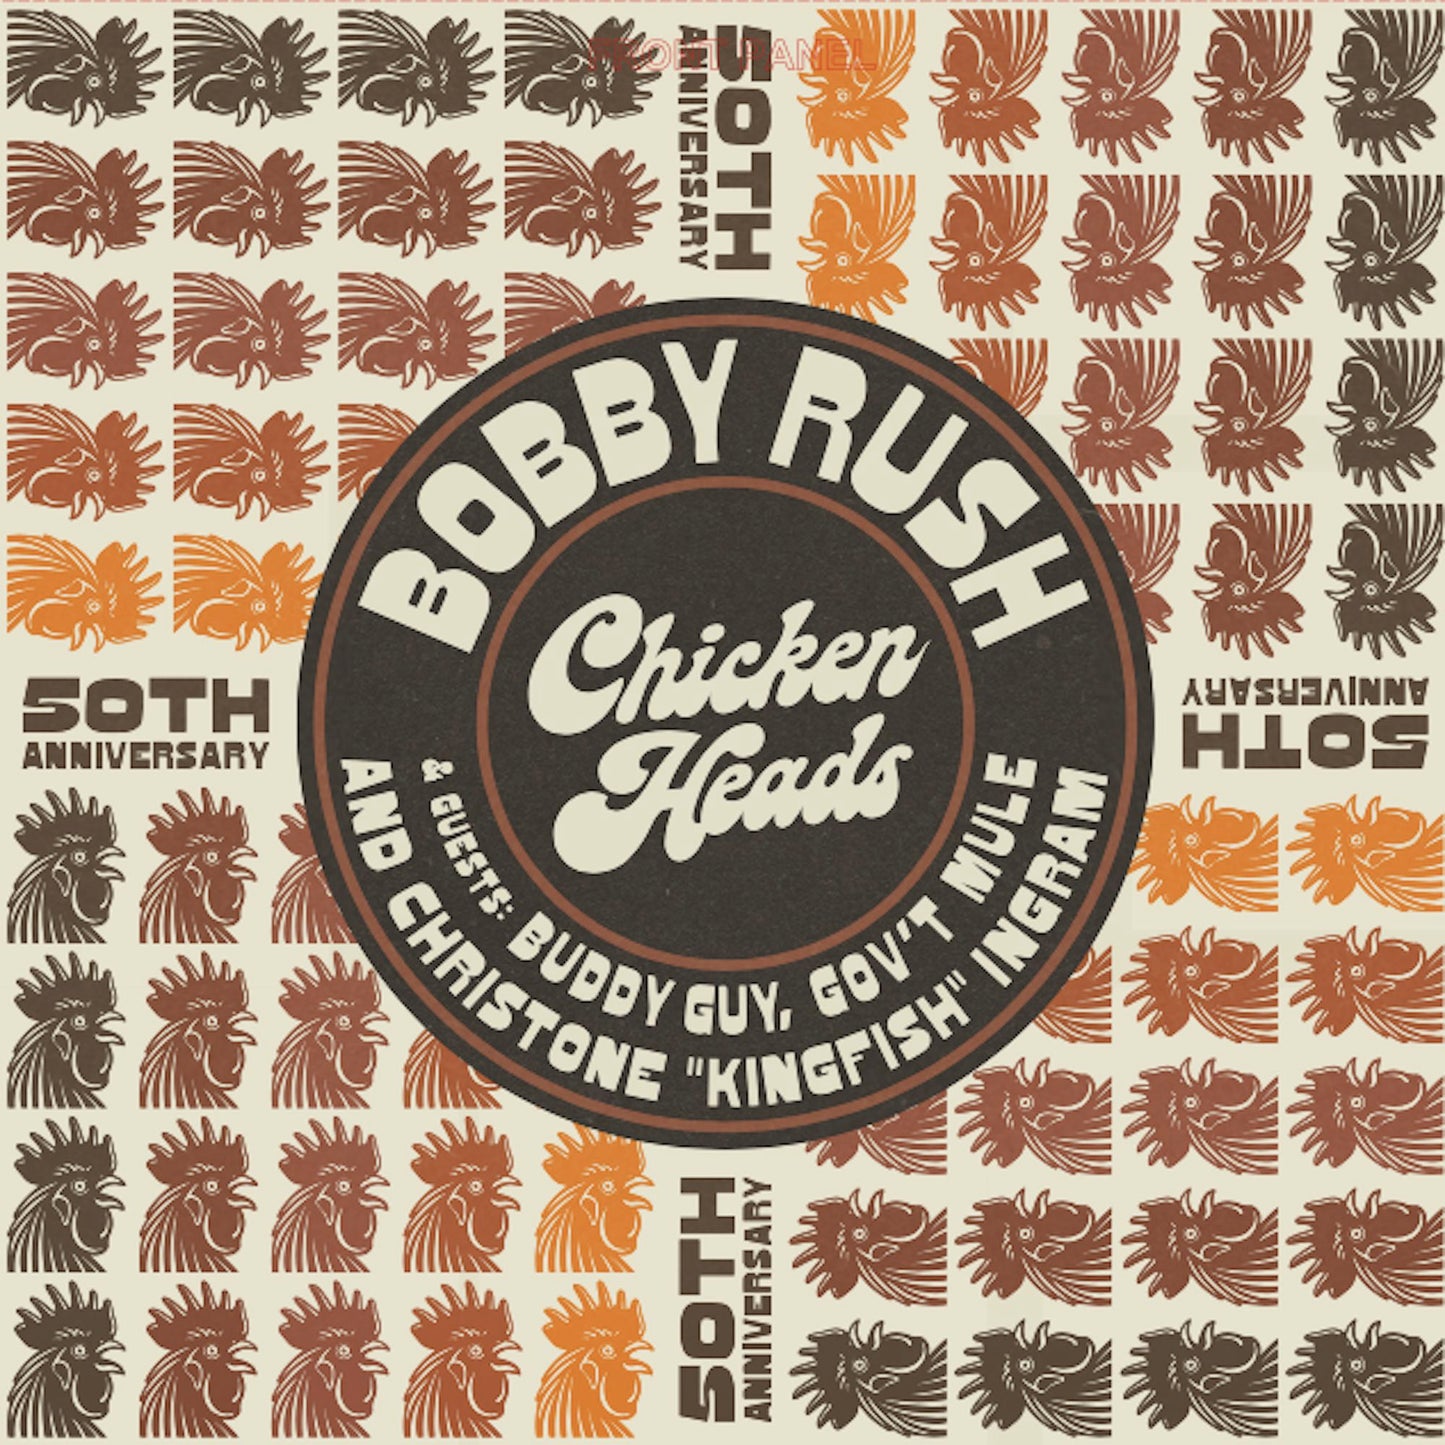 Bobby Rush ''Chicken Heads (50th Anniversary)'' 12" EP